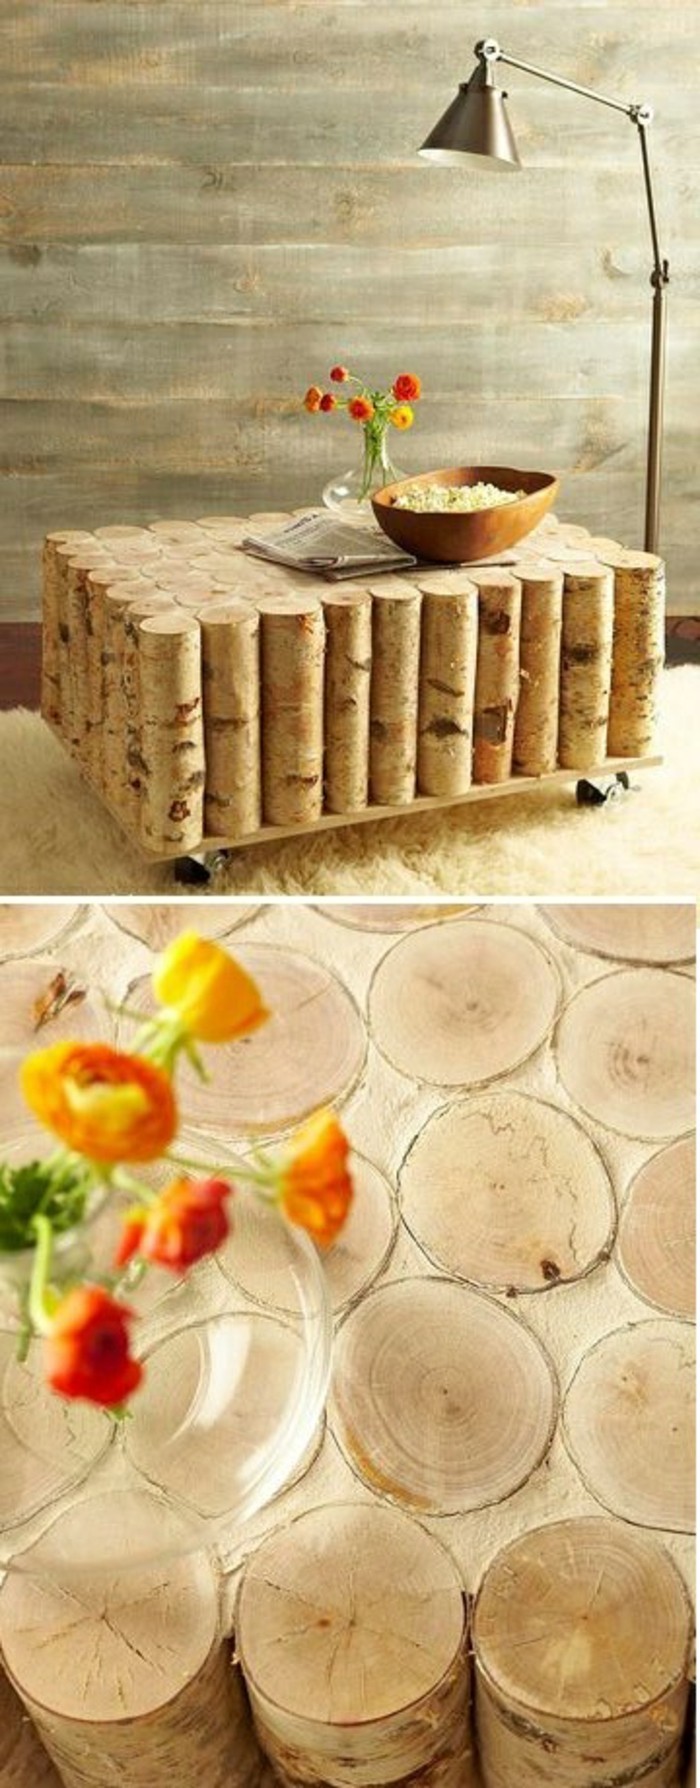 DIY-moebel Wohnideen-bricolaje-creación de tabla-de-madera-y-braumscheiben